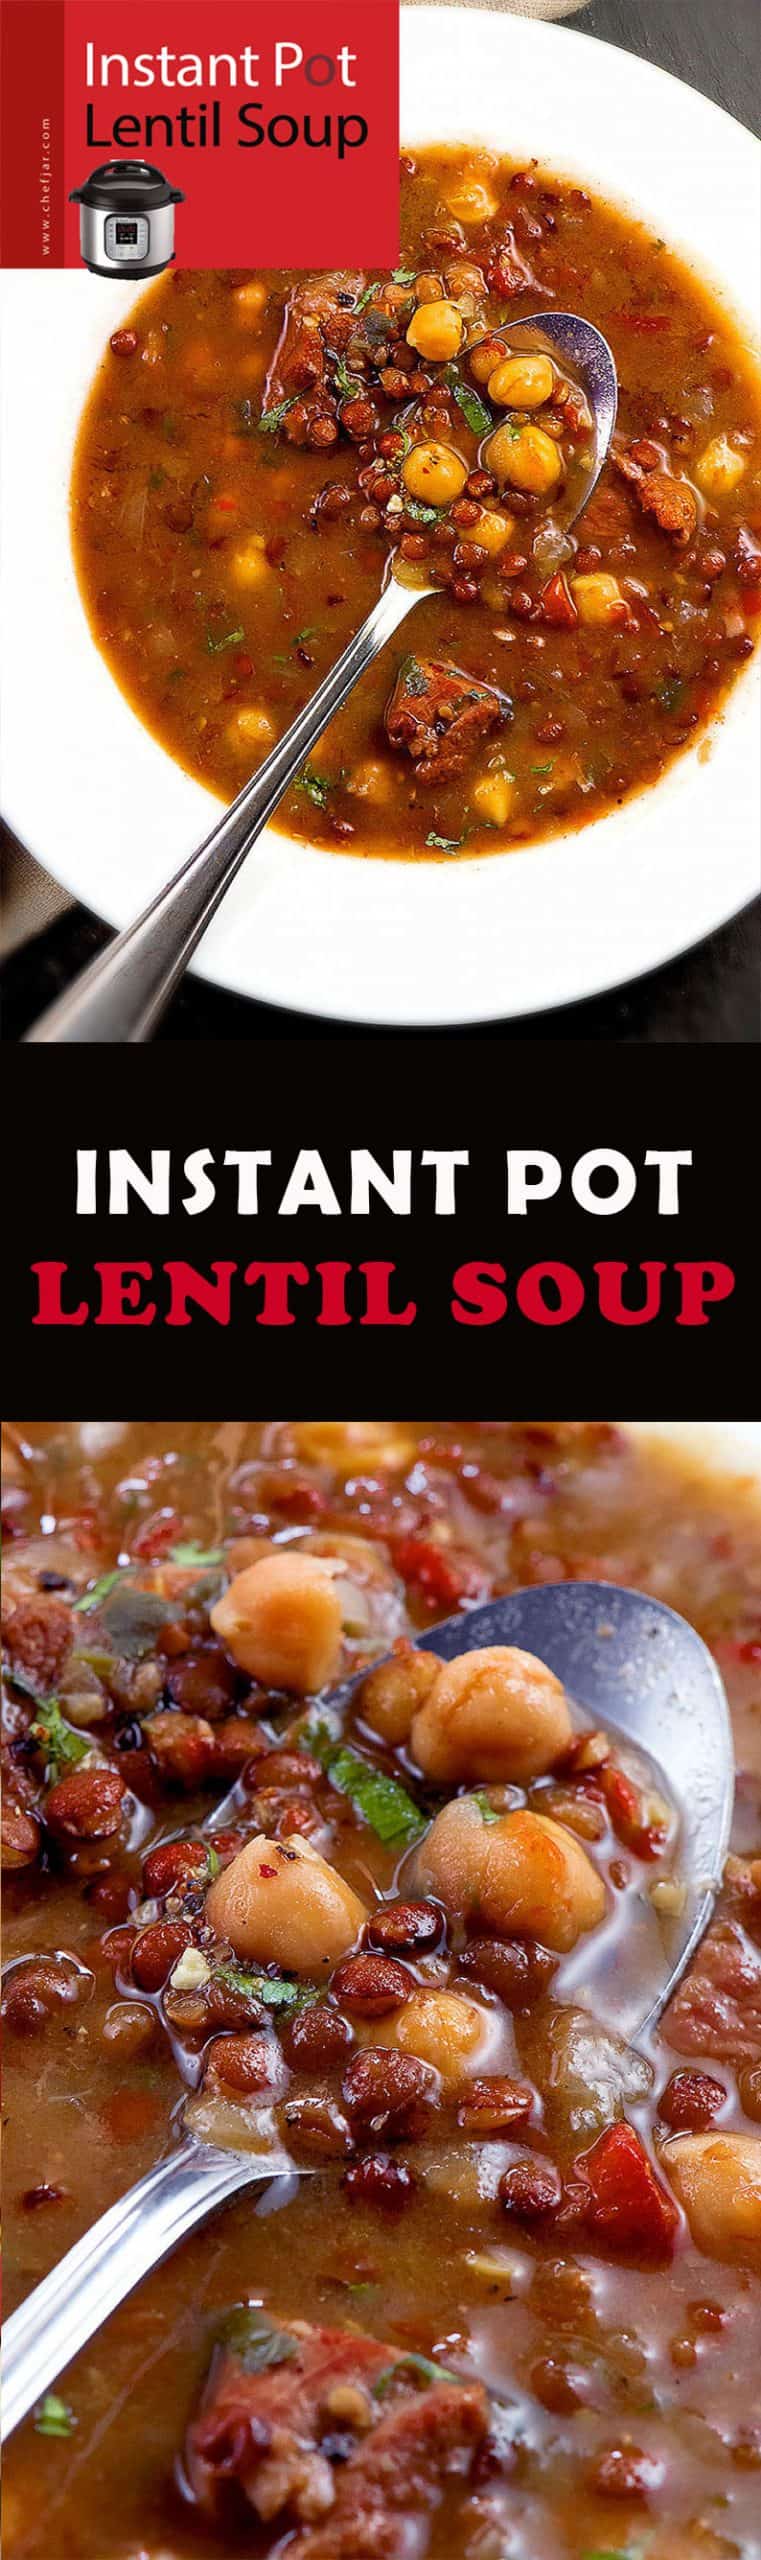 instant-pot-lentil-soup